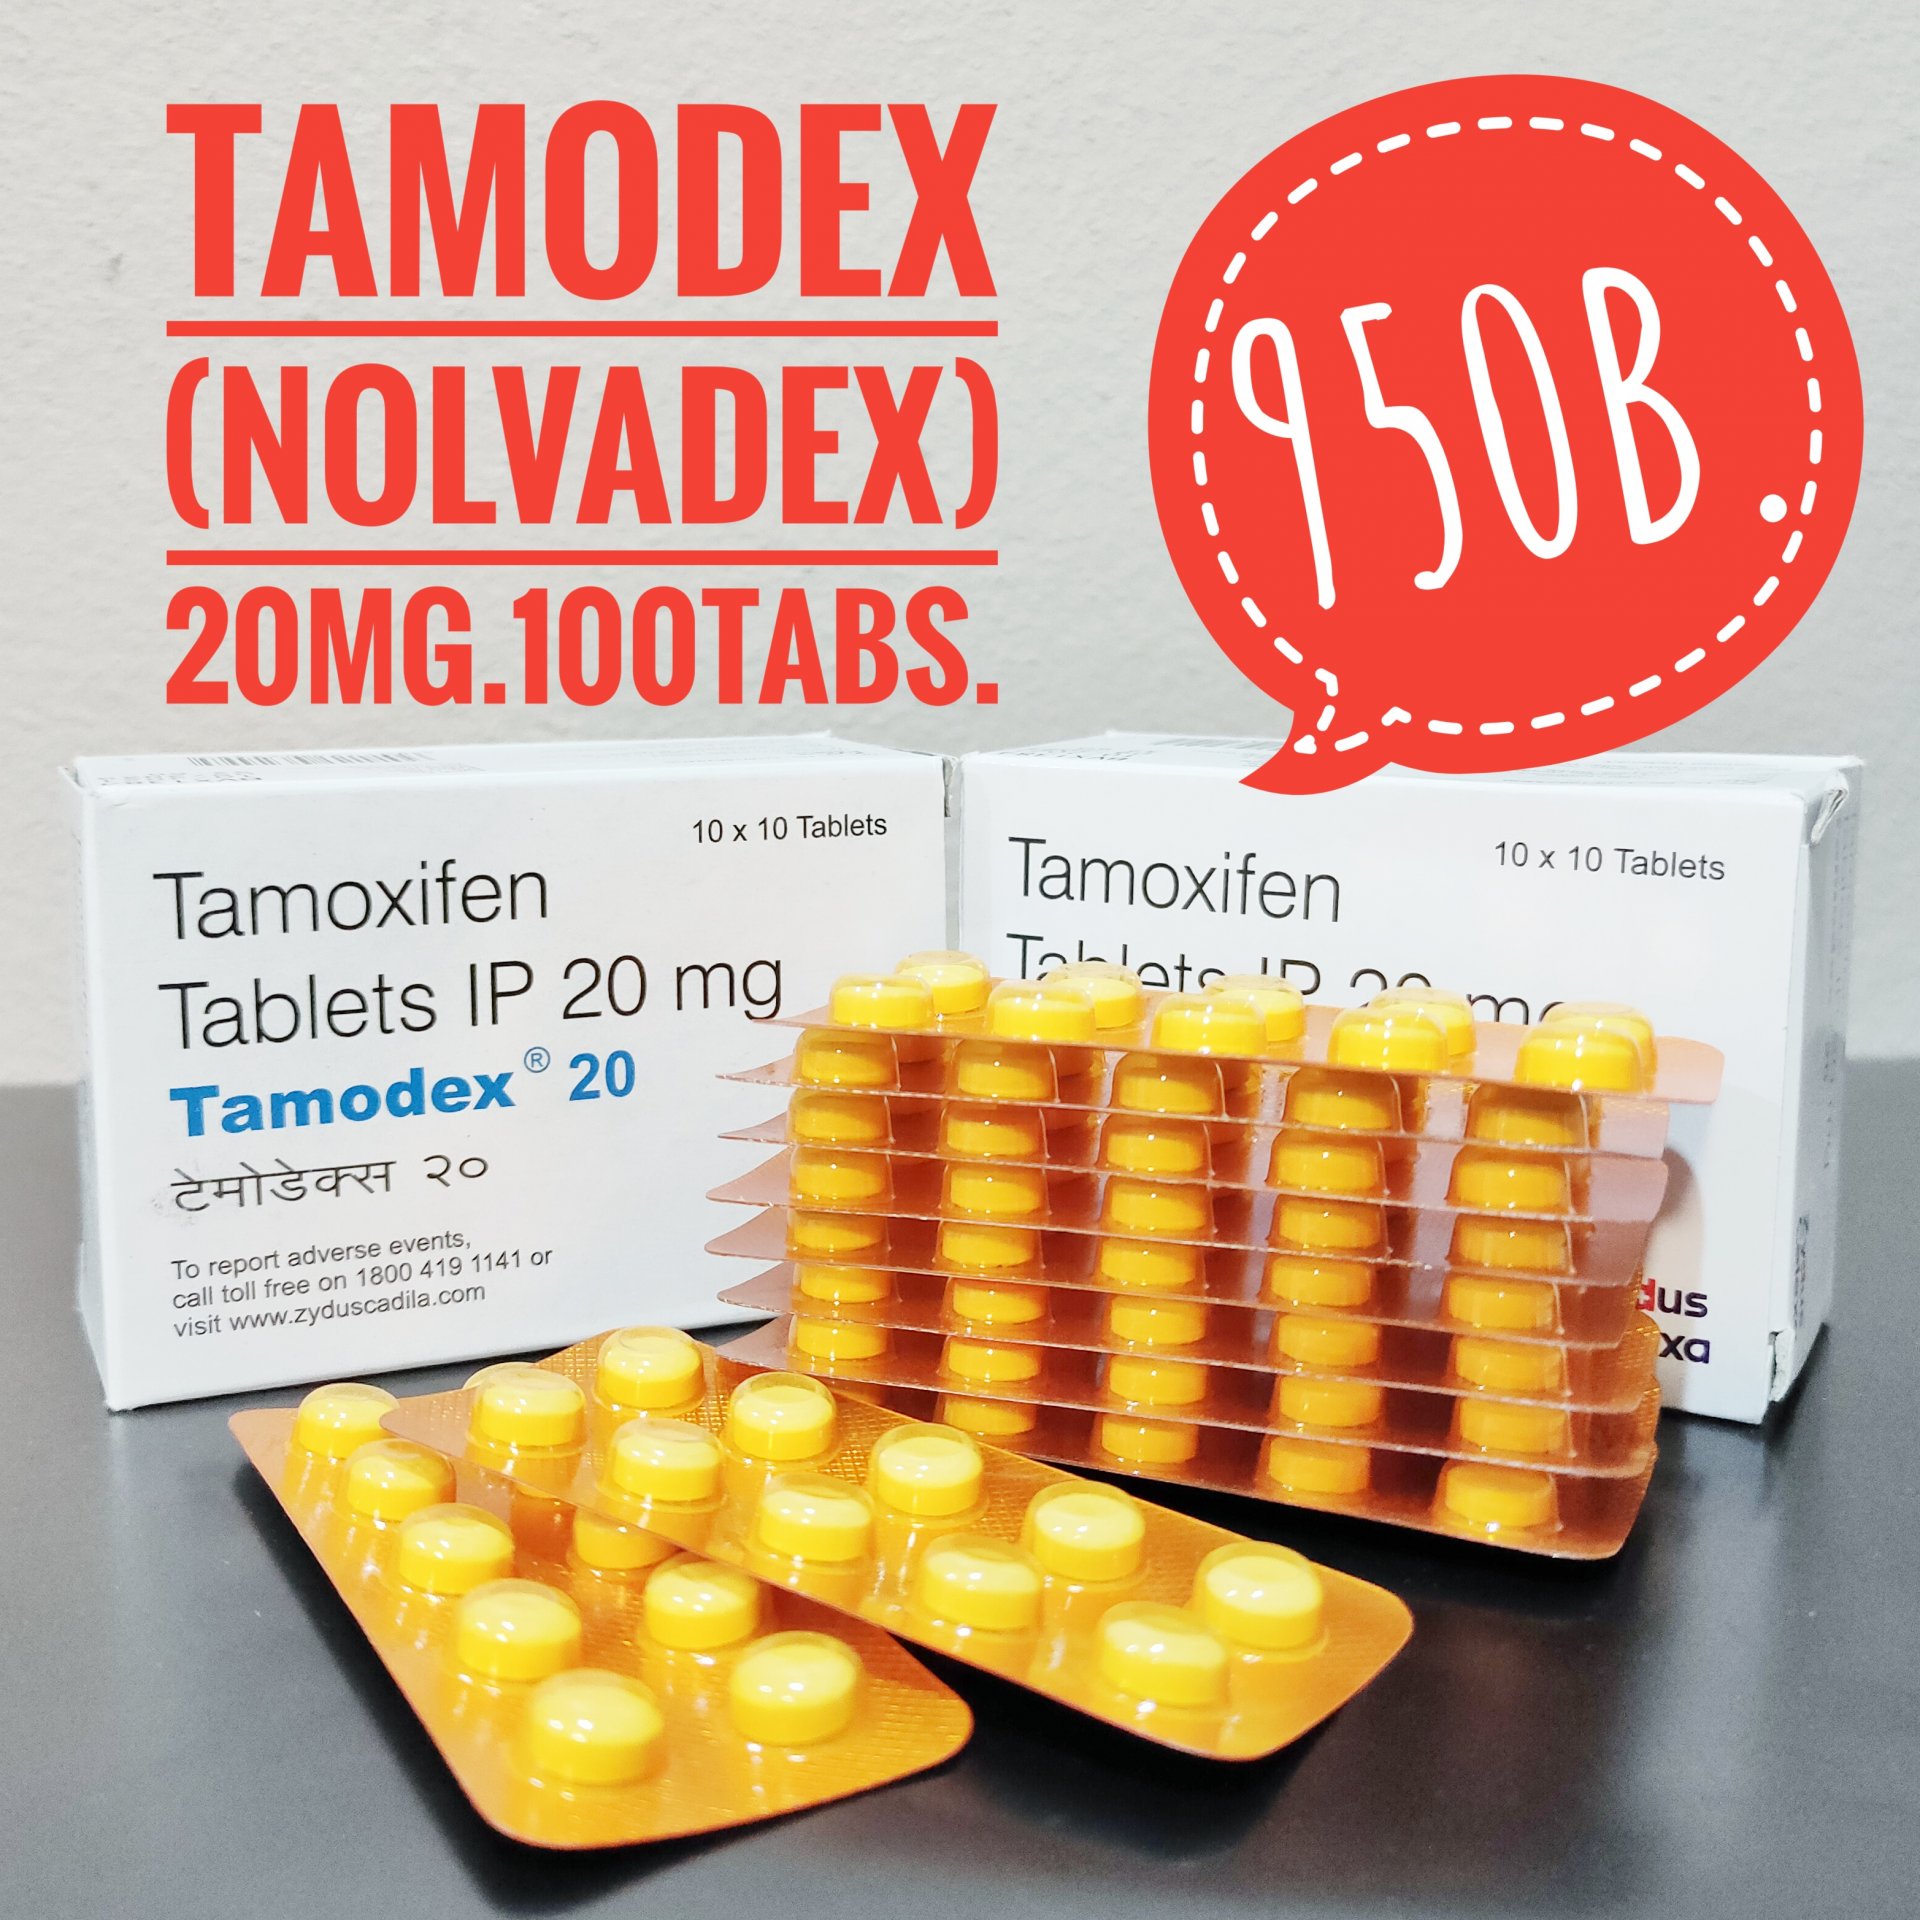 ZYDUS CADILLA TAMODEX (Nolvadex) 20 mg. 100 เม็ด (tablets)